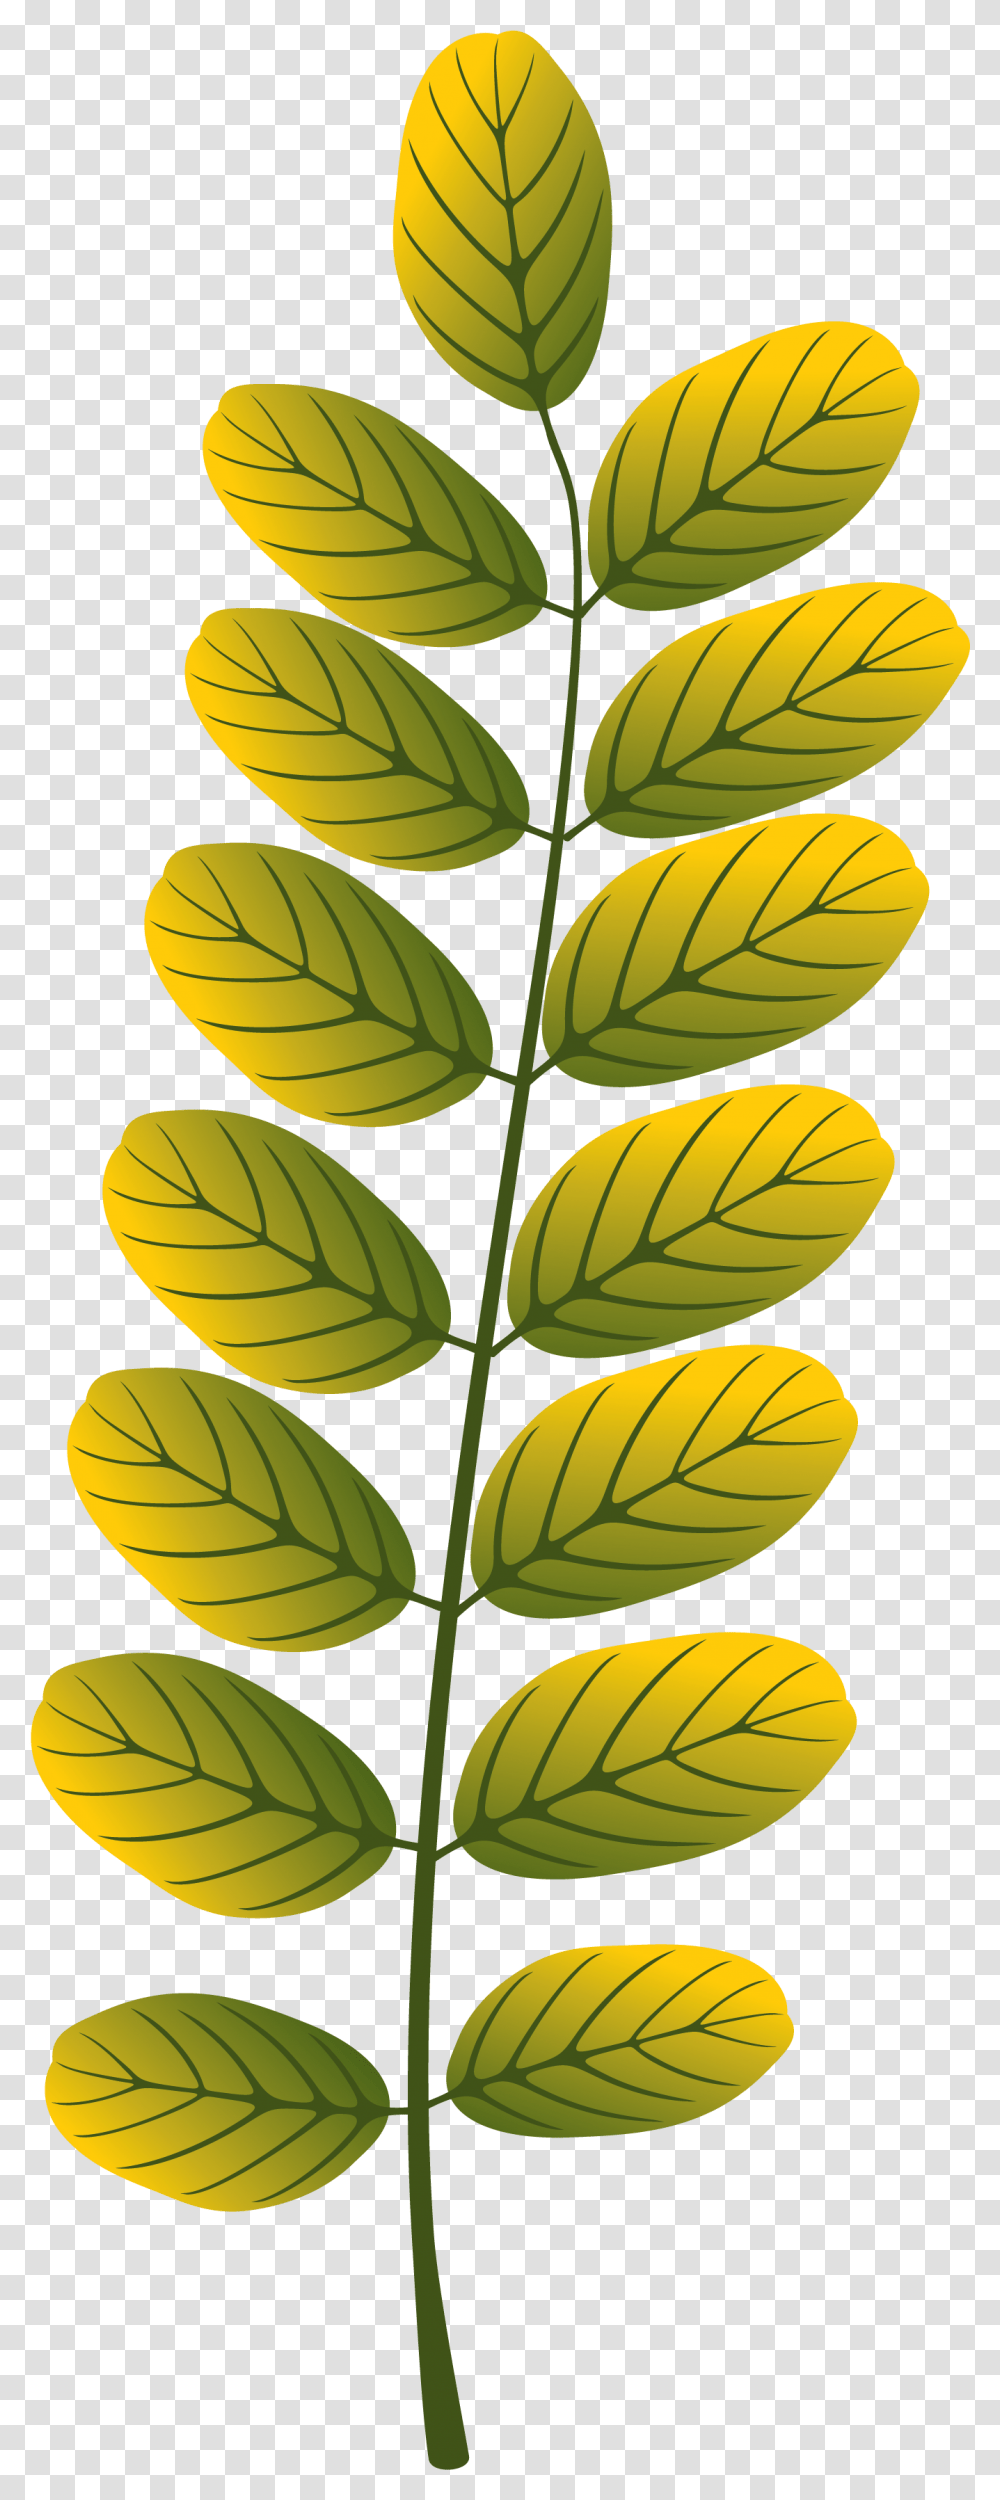 Leaves Designing, Leaf, Plant, Green, Pineapple Transparent Png